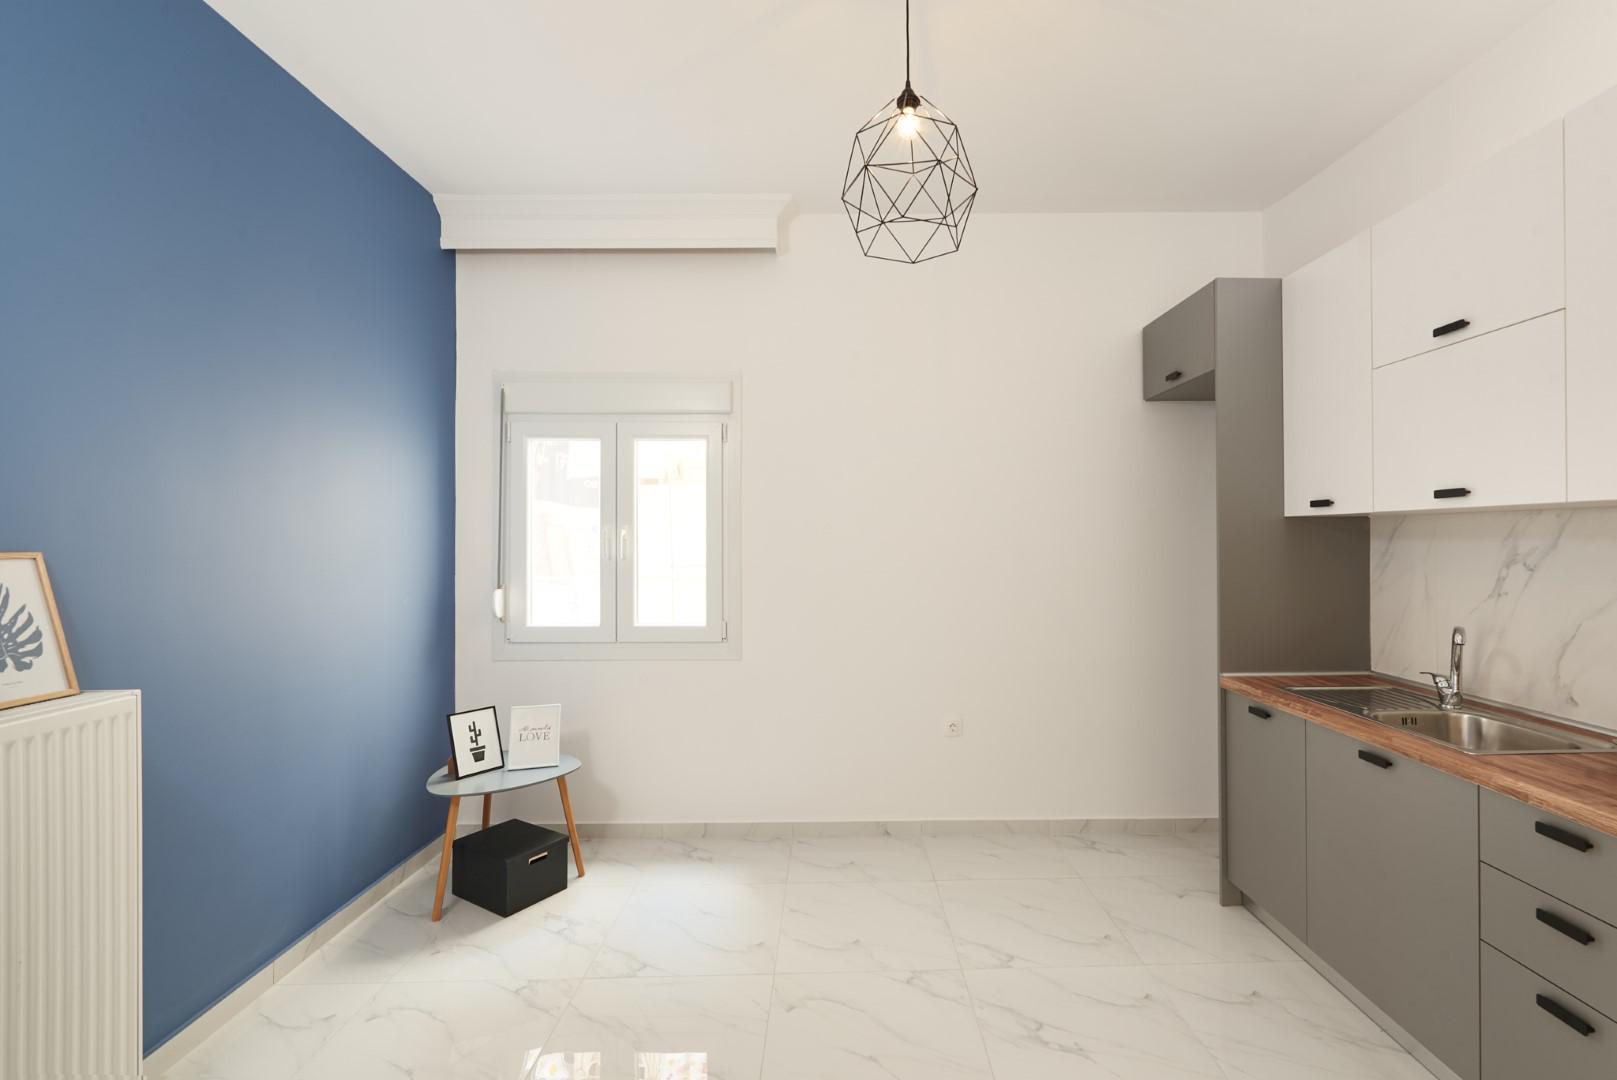 Apartment Renovation | 45 sq.m. | Martiou